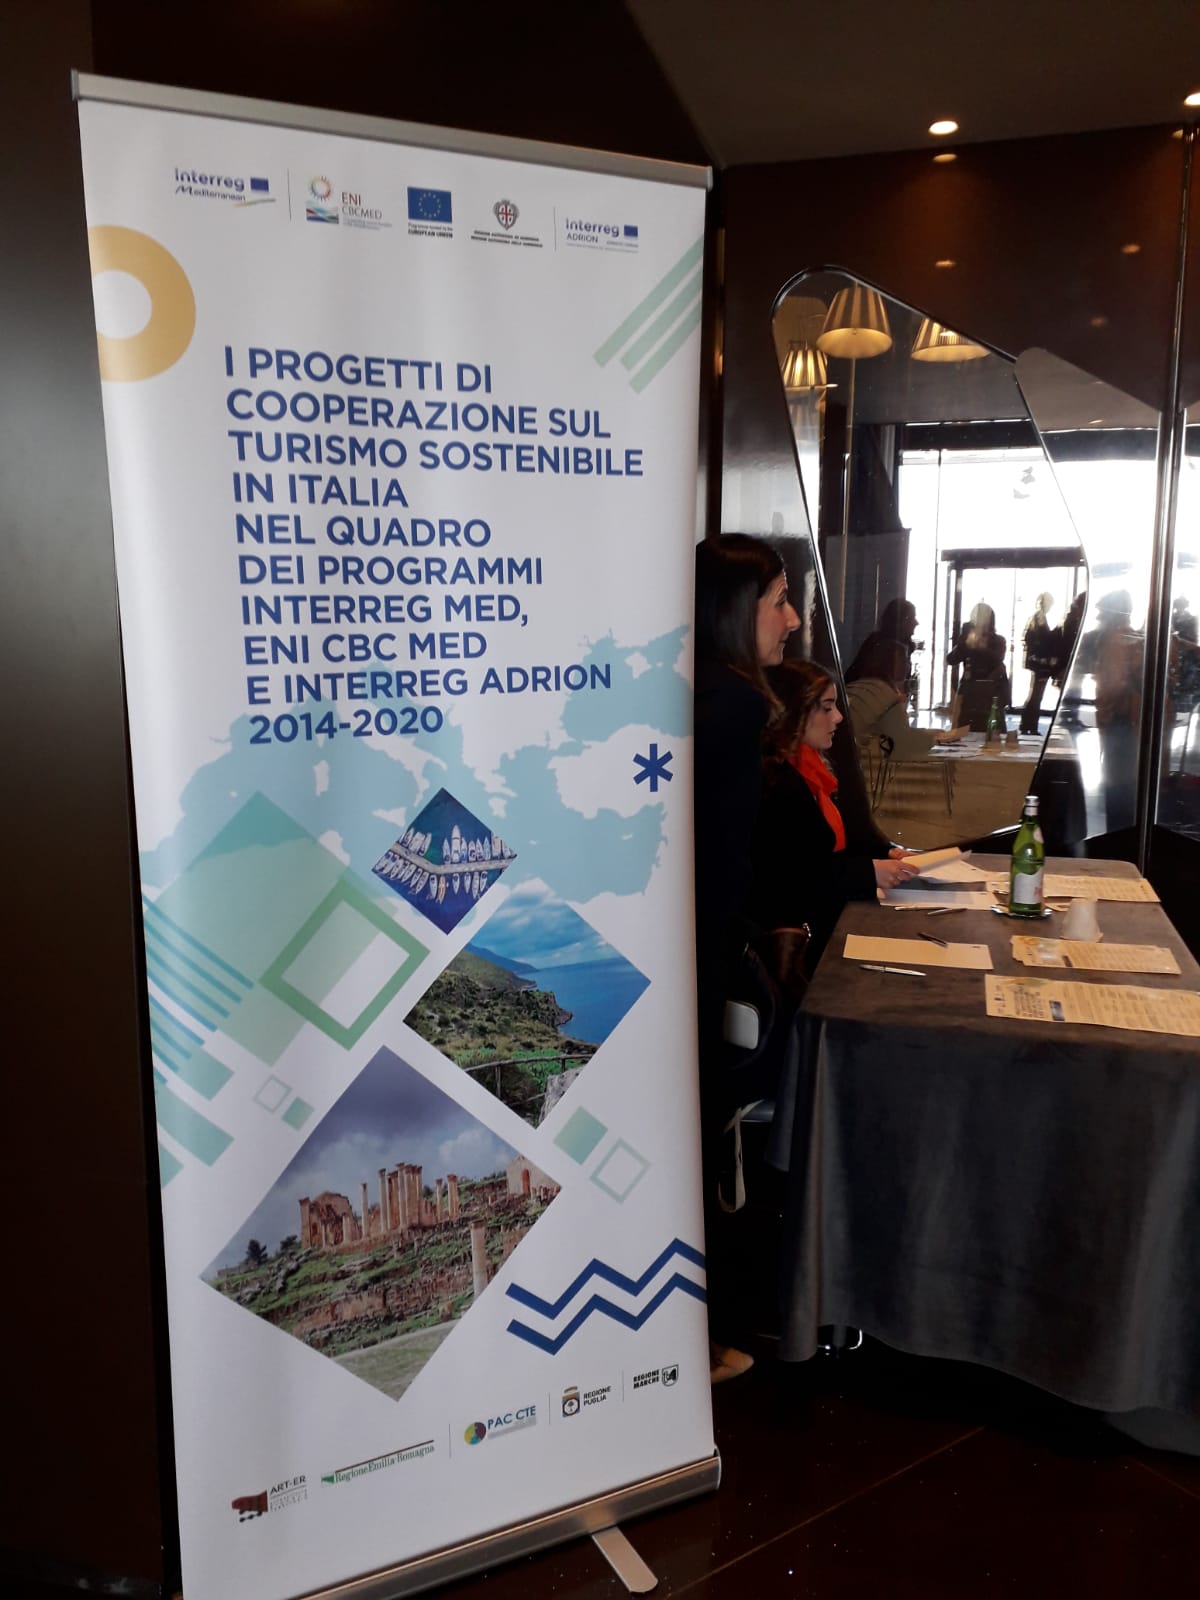 Gallery Bari, 30 marzo 2023 – Evento “Presentazione del Rapporto di Valutazione dei progetti di cooperazione sul Turismo Sostenibile, nel quadro dei Programmi Interreg Euro-MED, ENI CBC Med ed Interreg ADRION 2014-2020” - Slide 2 of 14